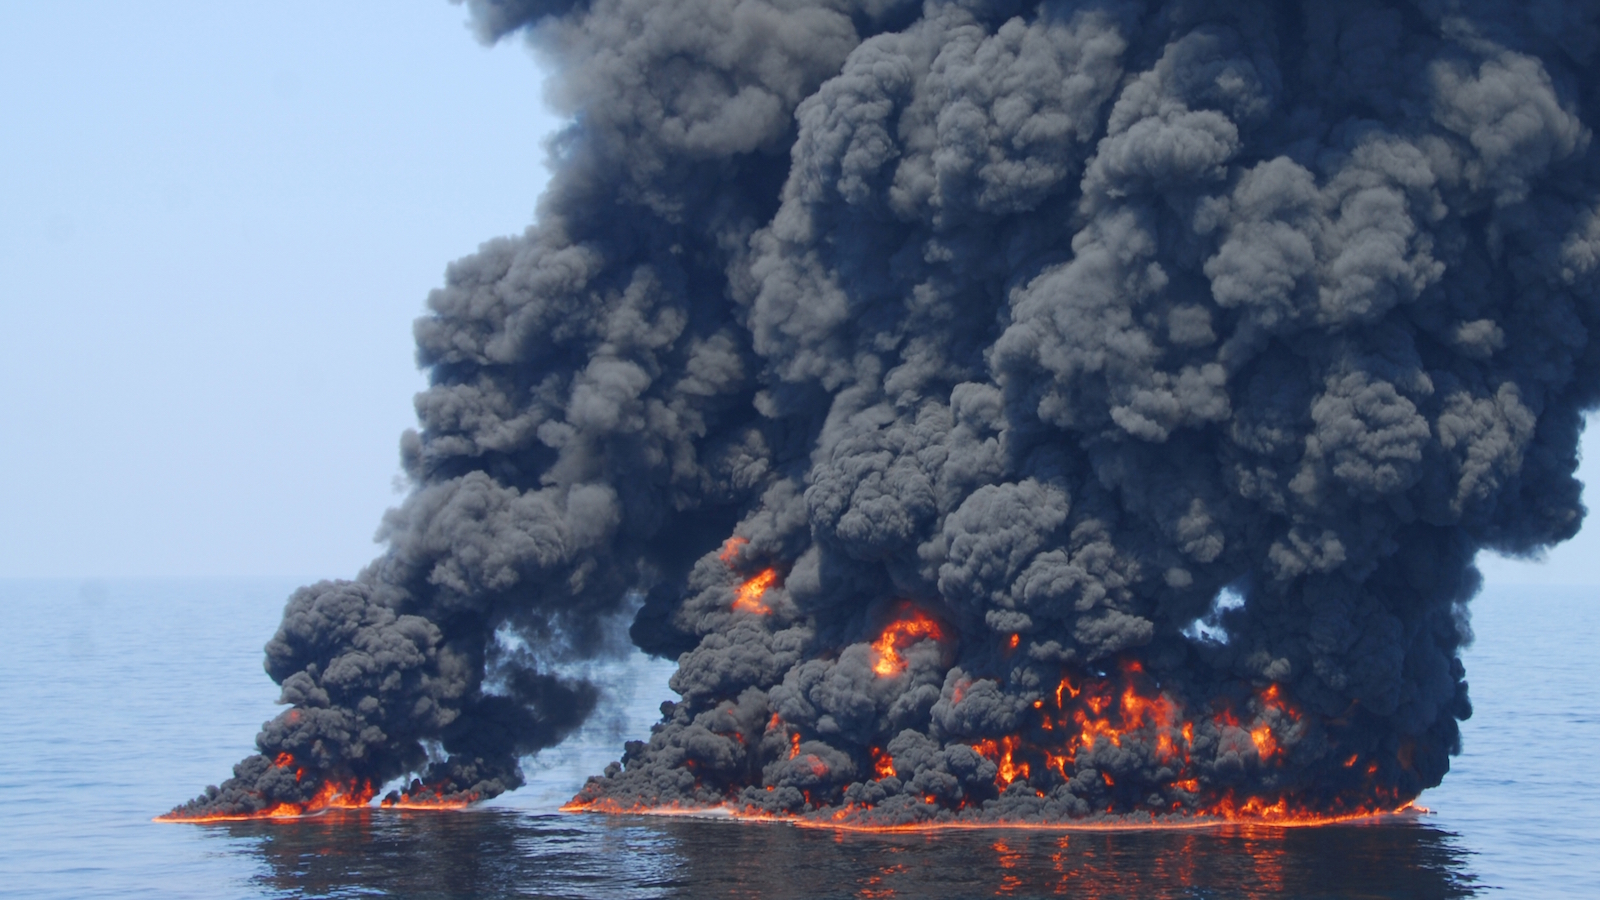 Взрыв на поверхности воды. Взрыв нефтяной платформы Deepwater Horizon в мексиканском заливе. Взрыв на нефтяной платформе Deepwater Horizon (20 апреля 2010). Взрыв на глубоководном горизонте в 2010 году. Взрыв и пожар на нефтяной платформе Deepwater Horizon.